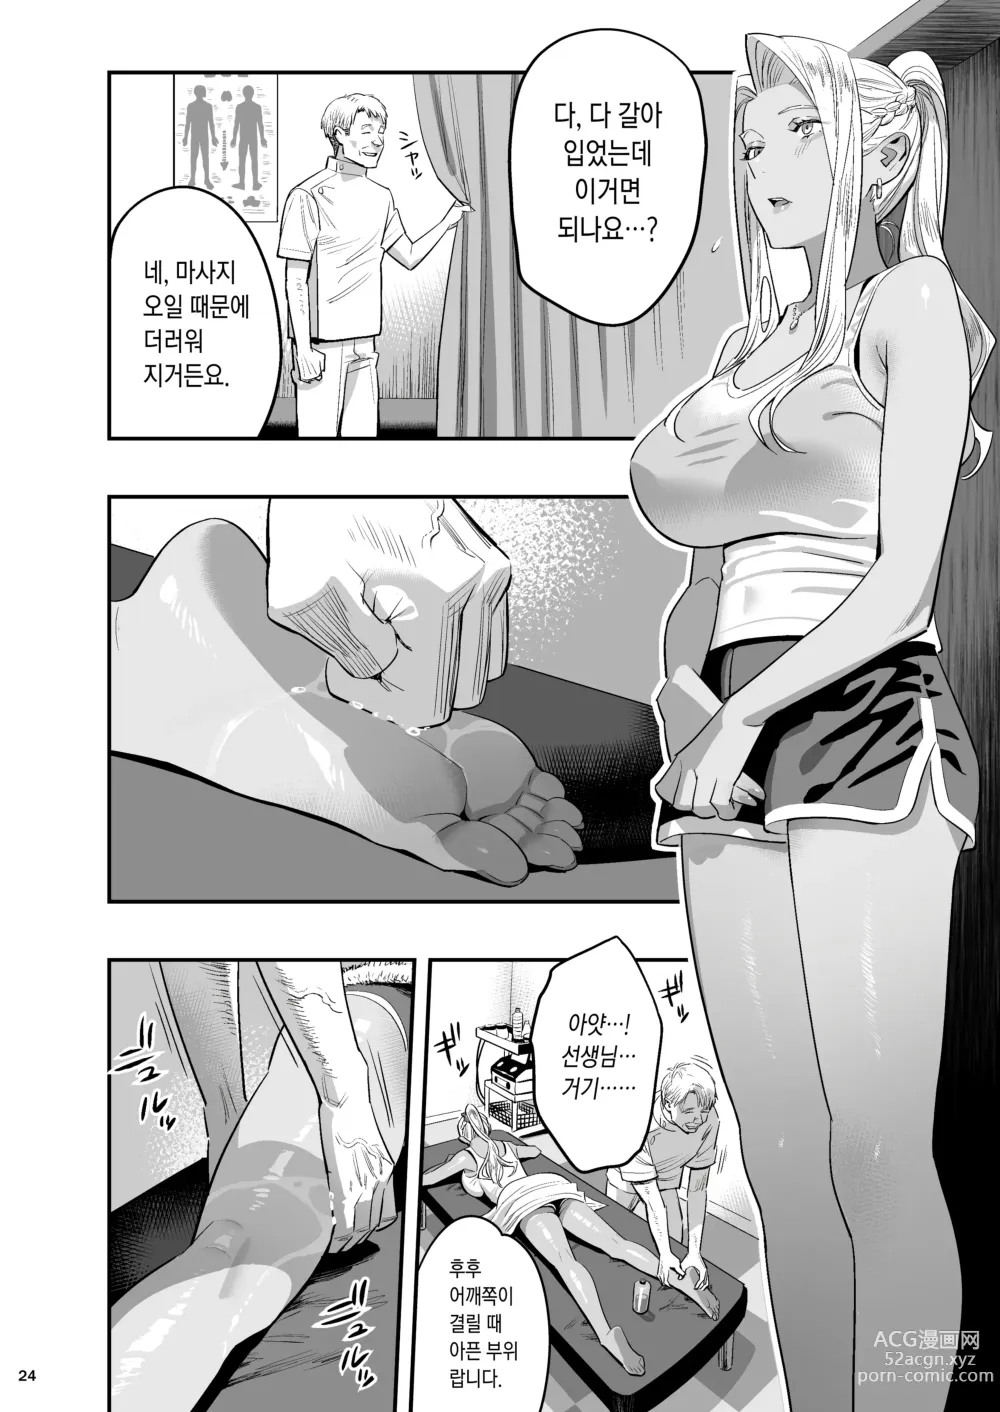 Page 21 of doujinshi 내가 먼저 좋아했는데 정체.